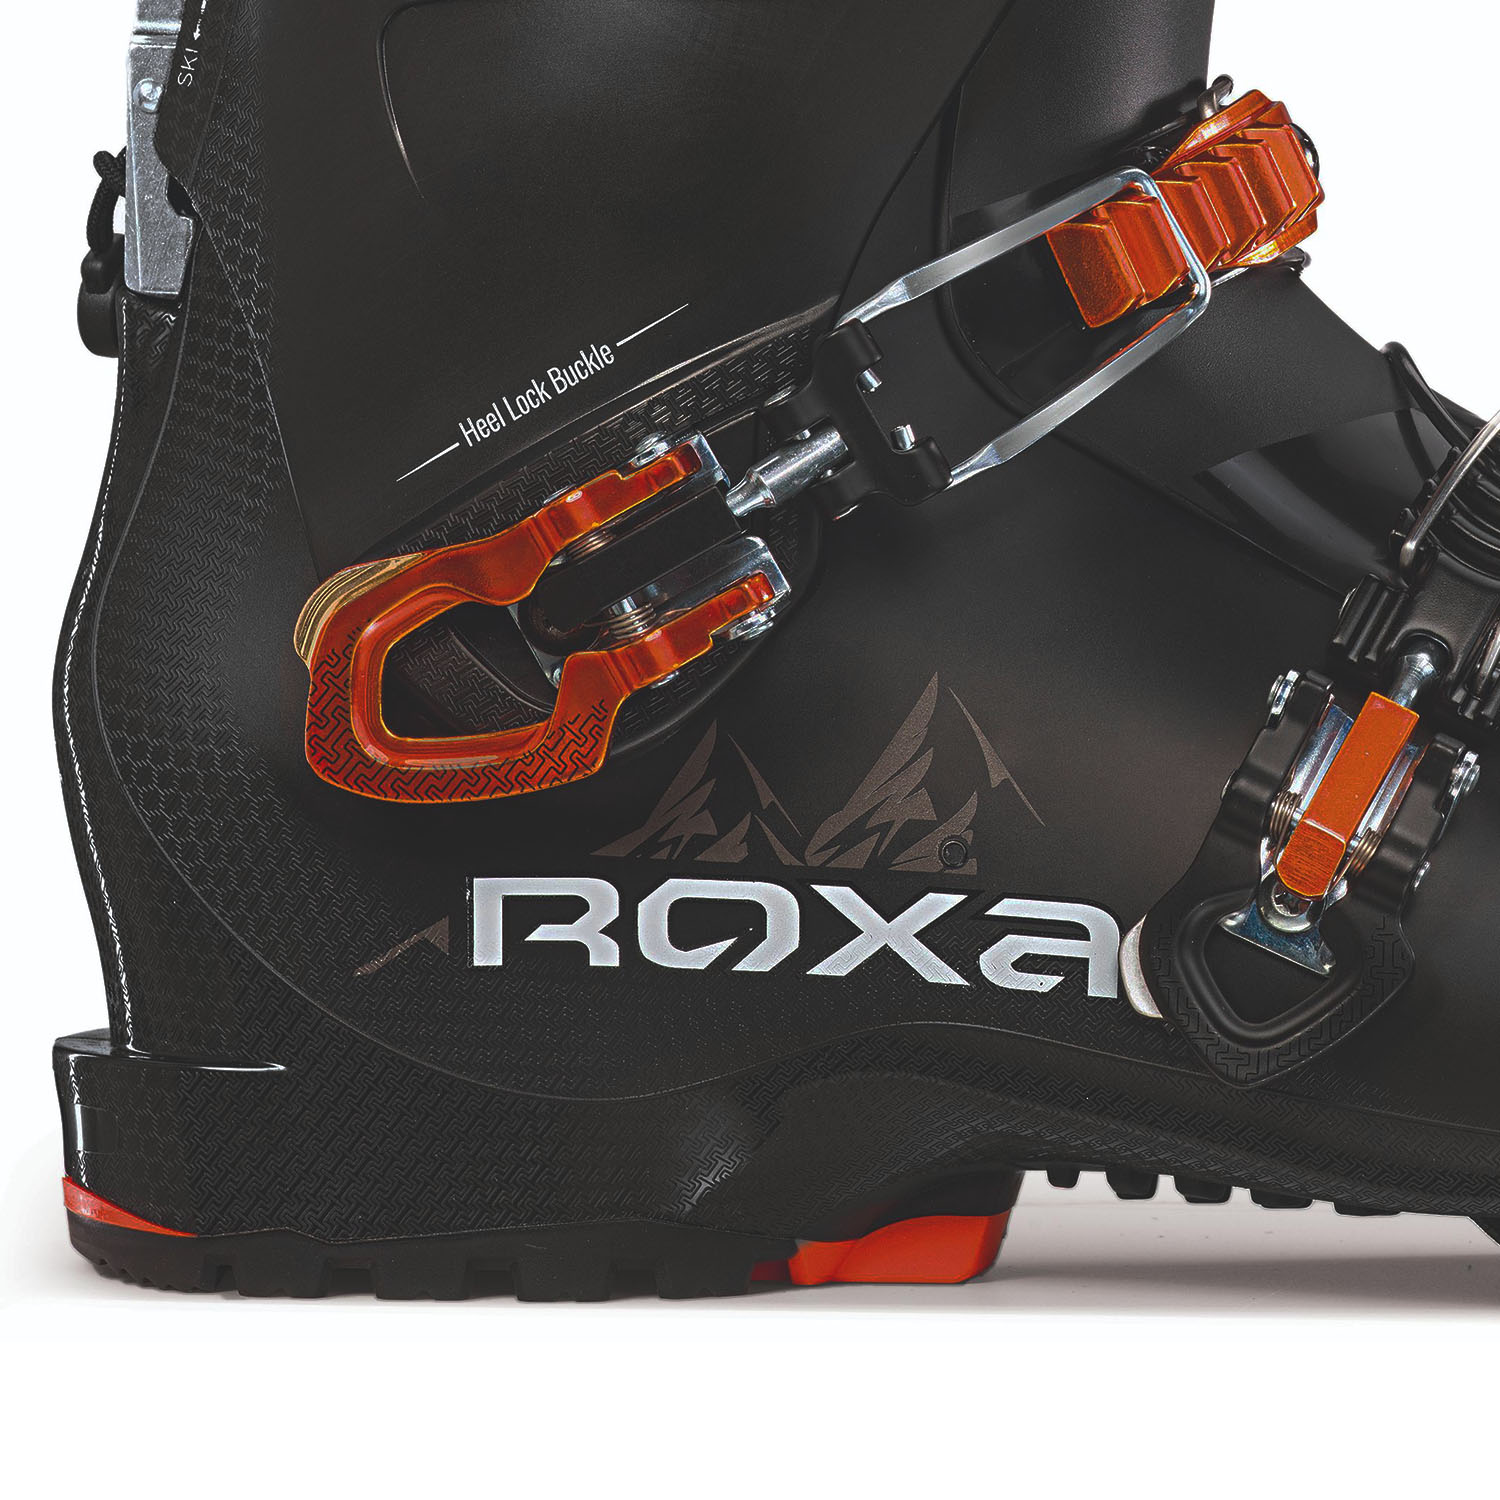 Горнолыжные ботинки ROXA R3 110 I.R Black